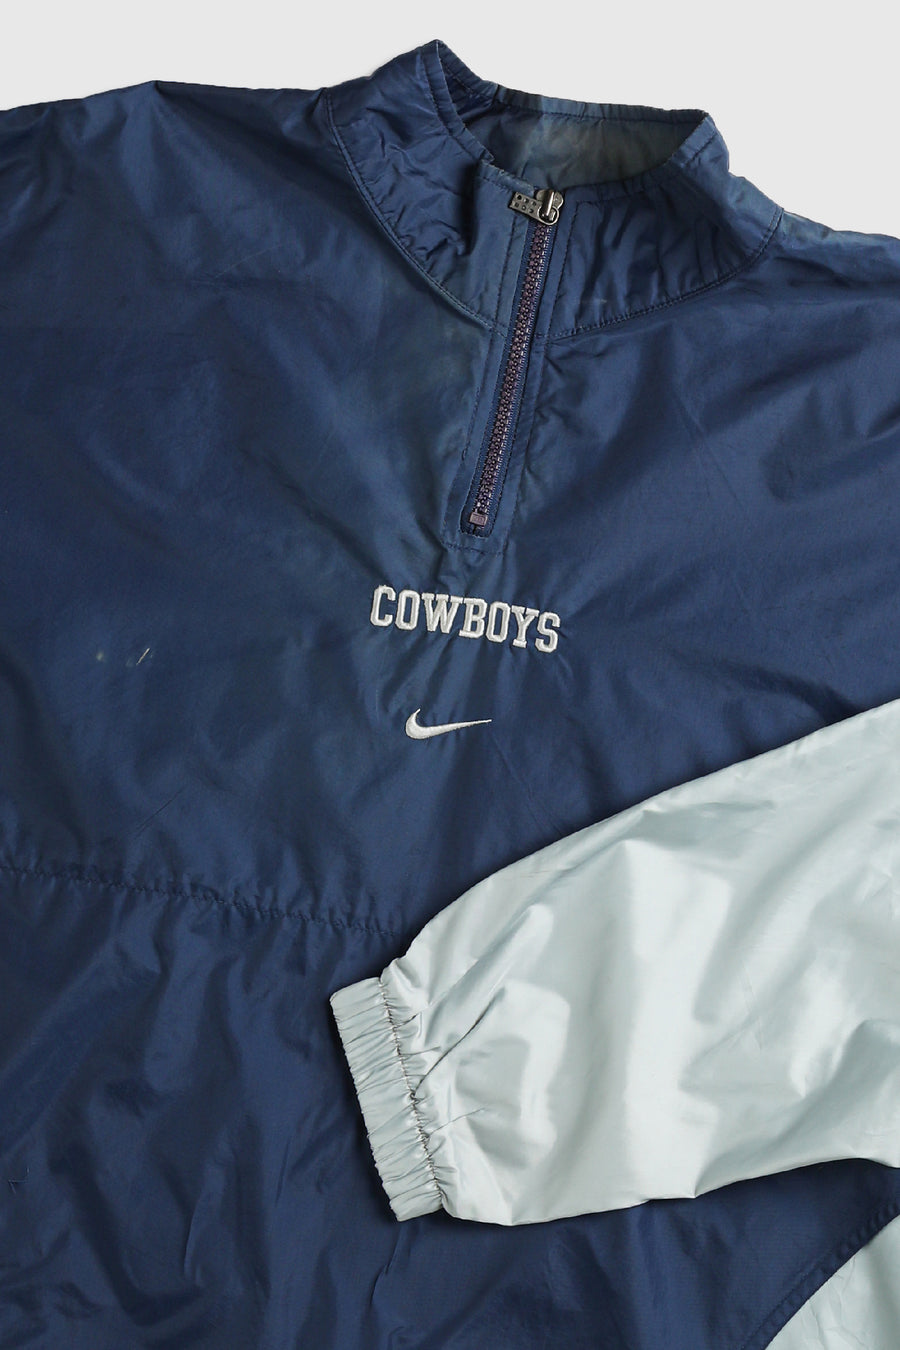 Vintage Nike NFL Cowboys Windbreaker Jacket